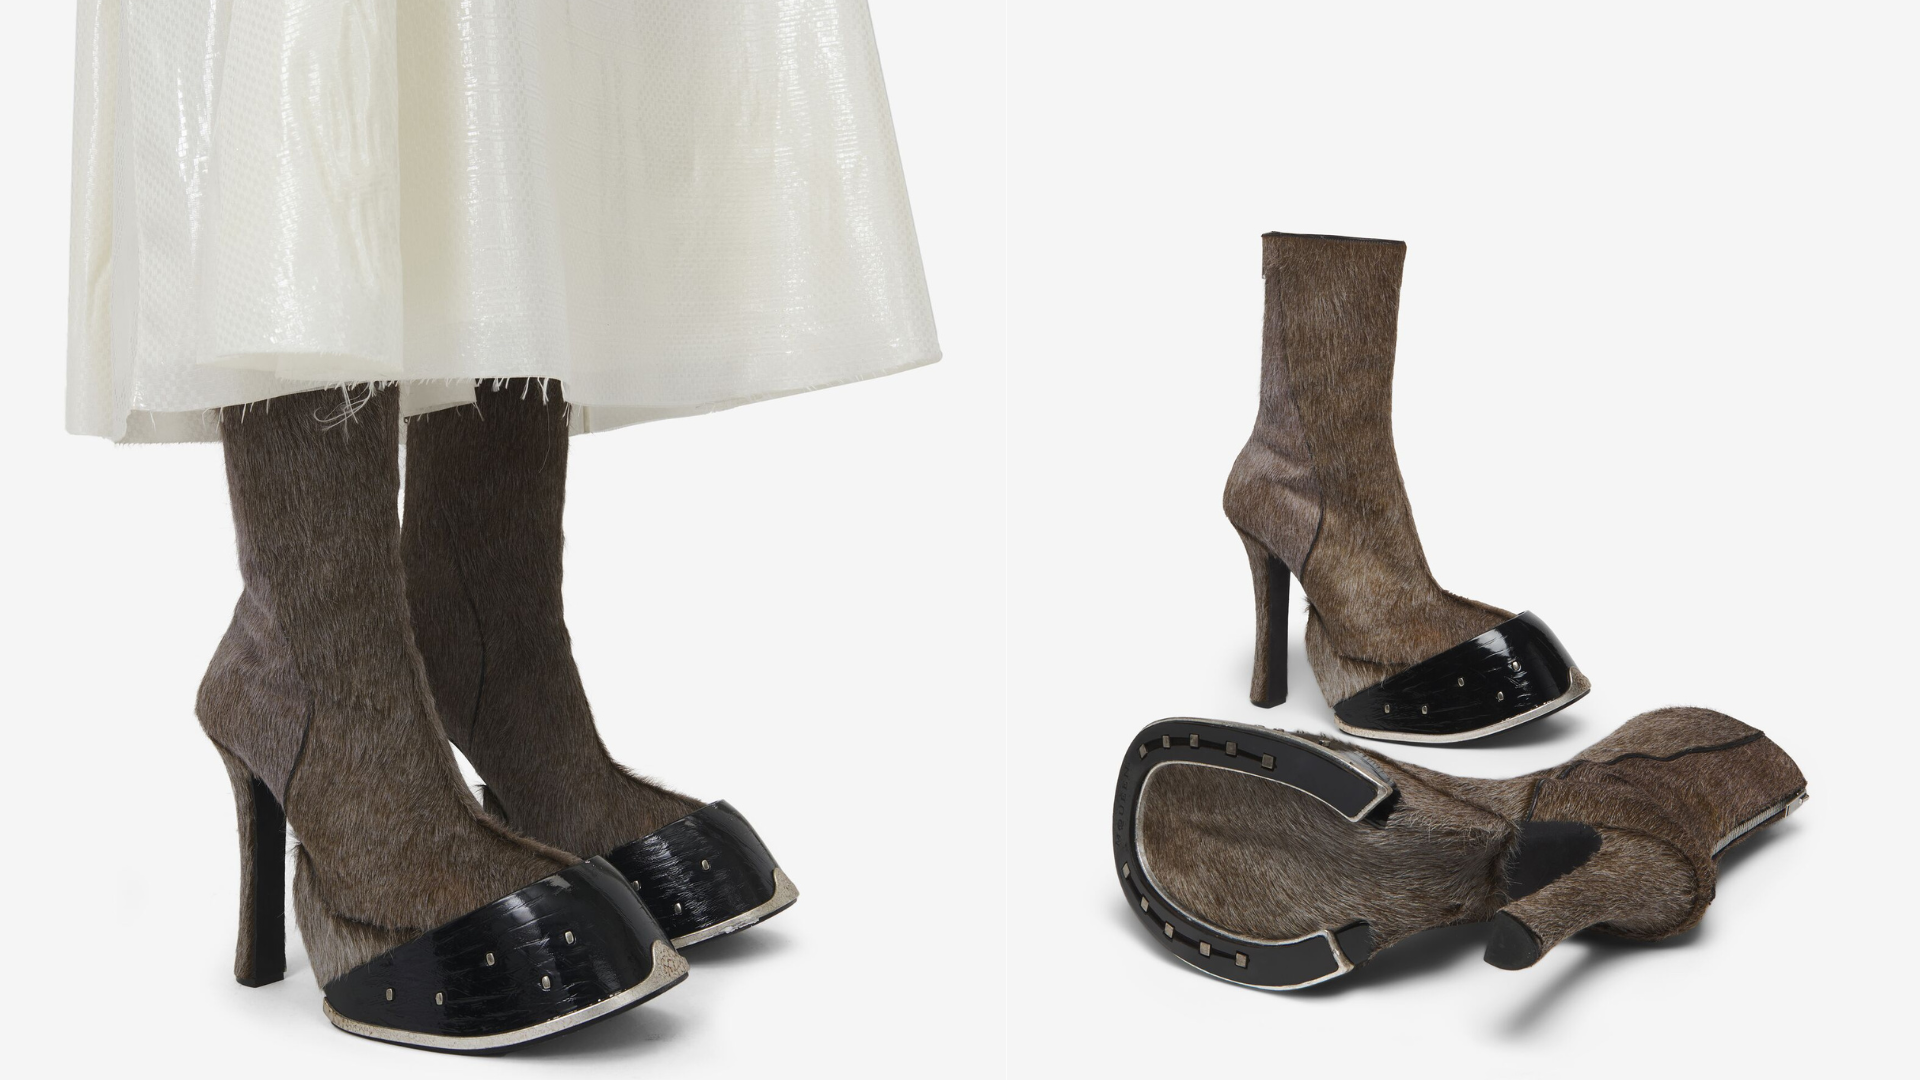 La moda sorprende nuevamente con una audaz propuesta de la prestigiosa marca Alexander McQueen. Sus nuevos "Hoof Boots", botines que imitan pezuñas de animales, ya están causando furor en el mundo fashion.